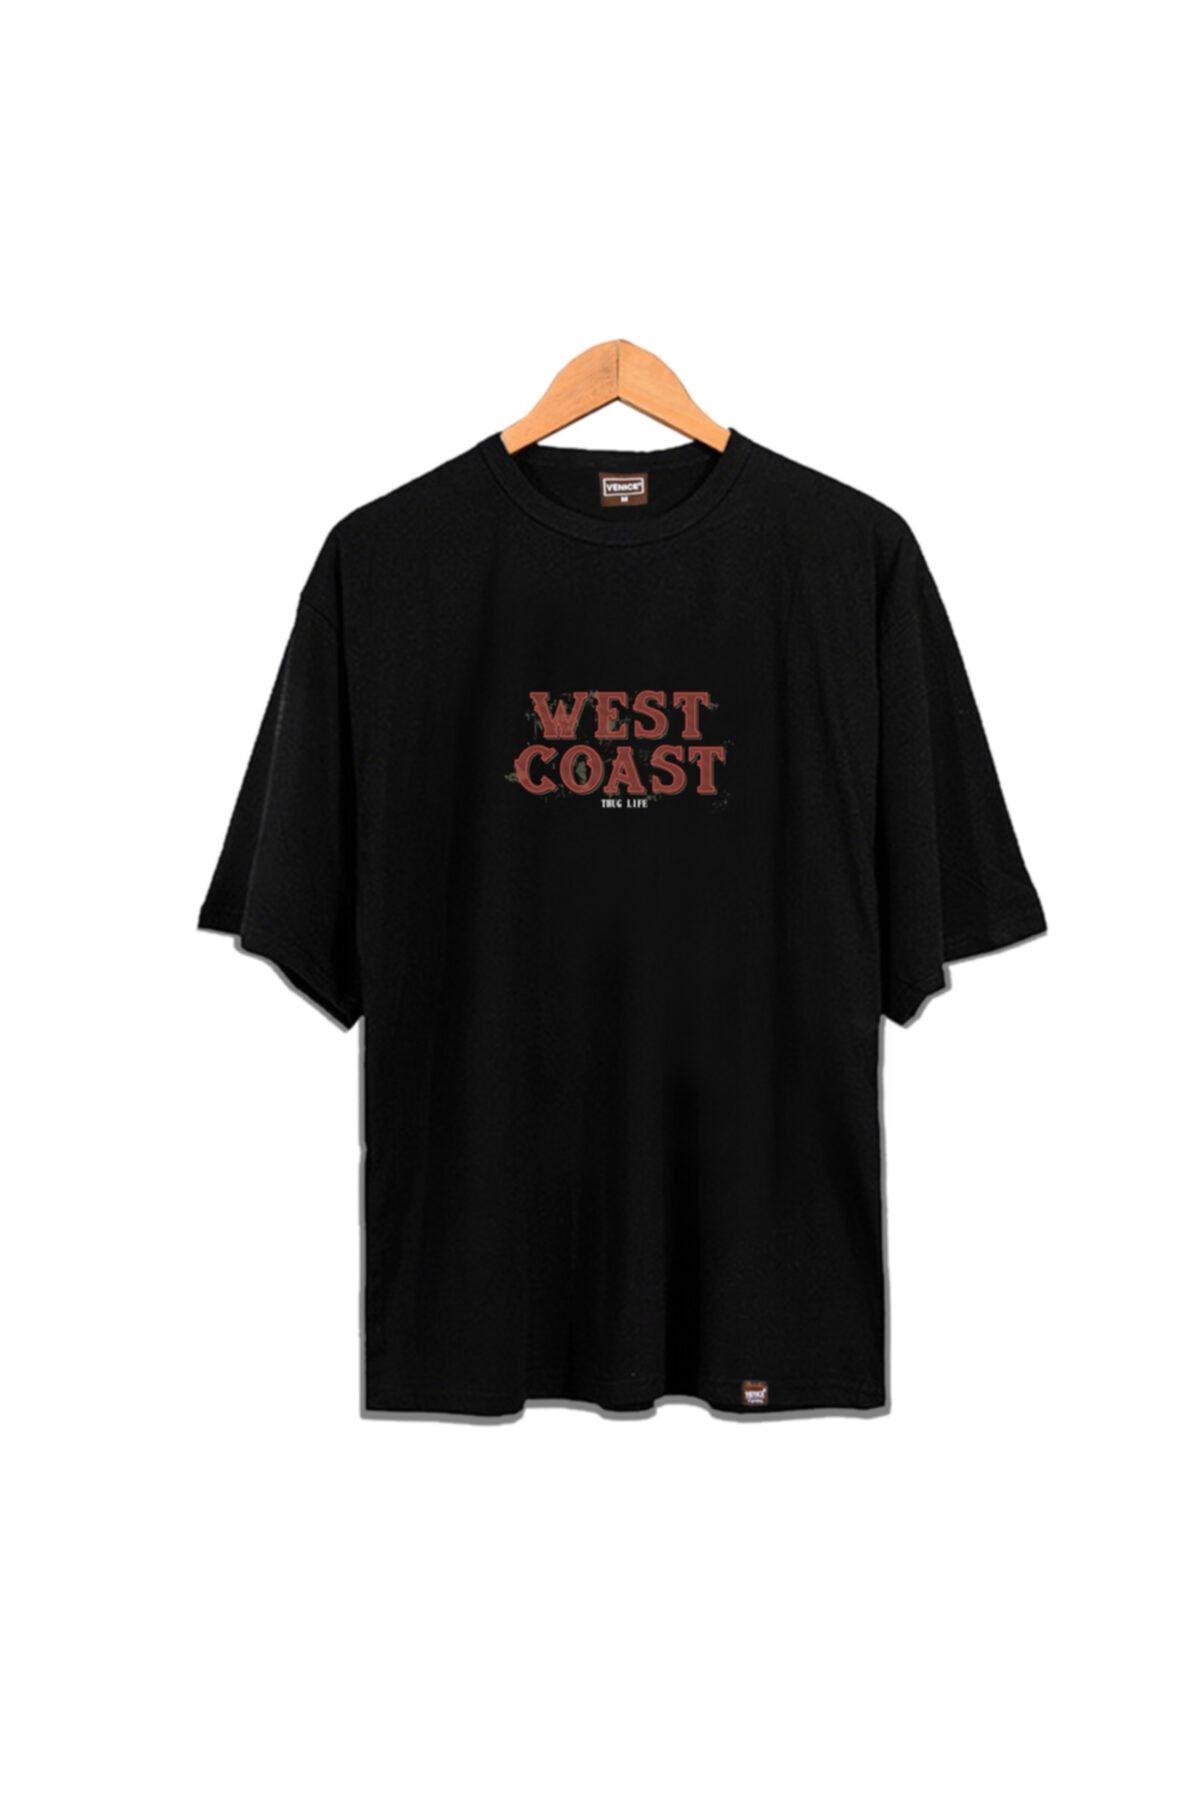 VENICE Clothing Unisex Siyah West Coast Oversize T-shirt